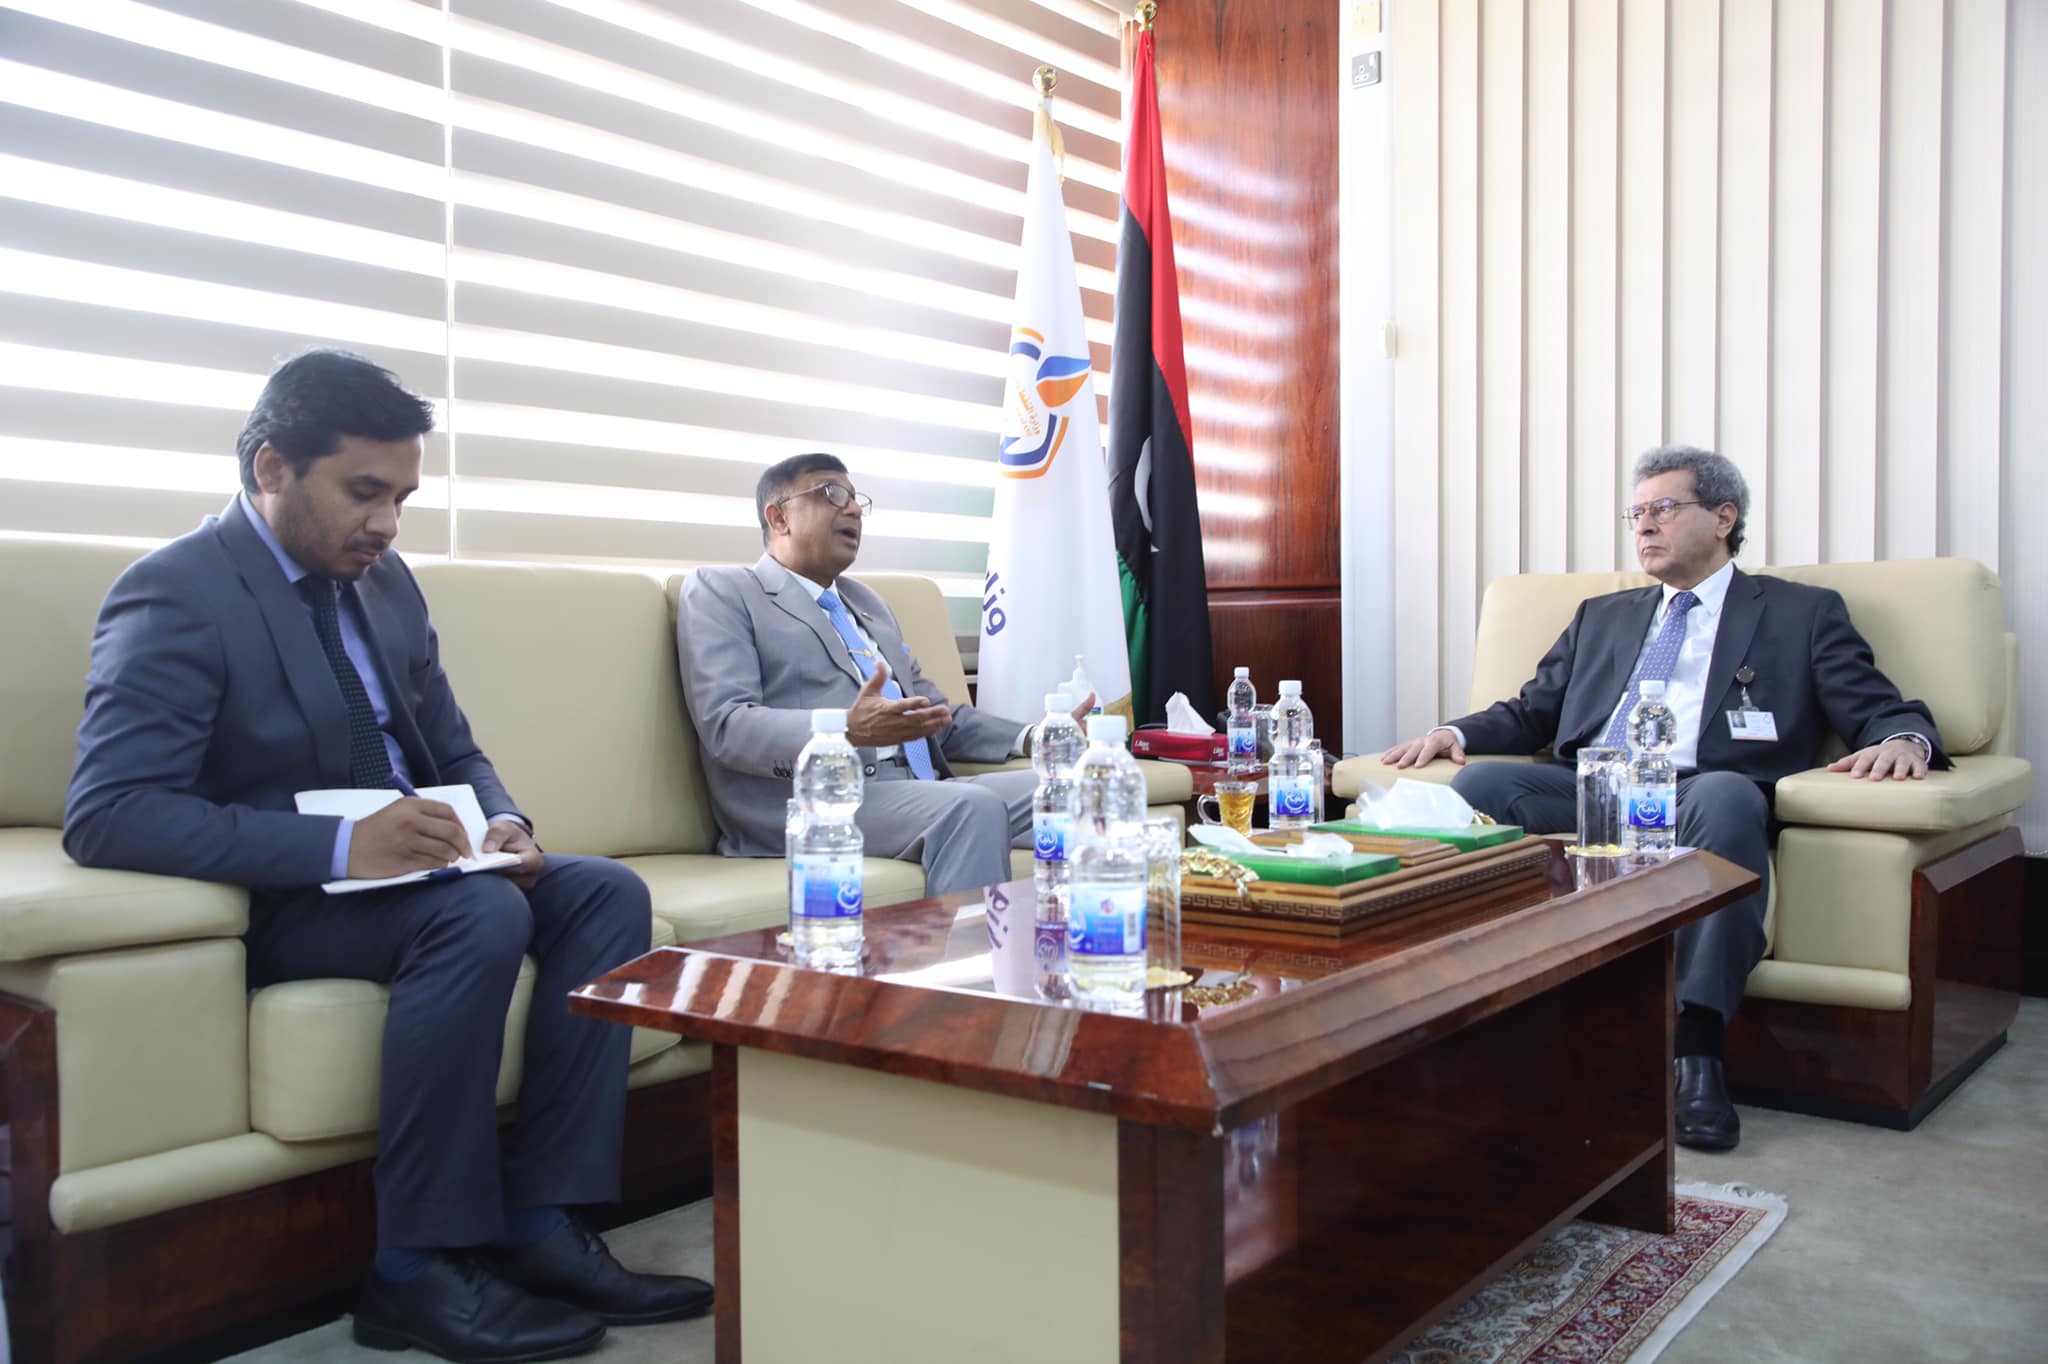 وزير النفط والغاز يُناقش مع سفير بنغلاديش لدى ليبيا أهمية تبادل الخبرات وتعزيز التعاون بين البلدين